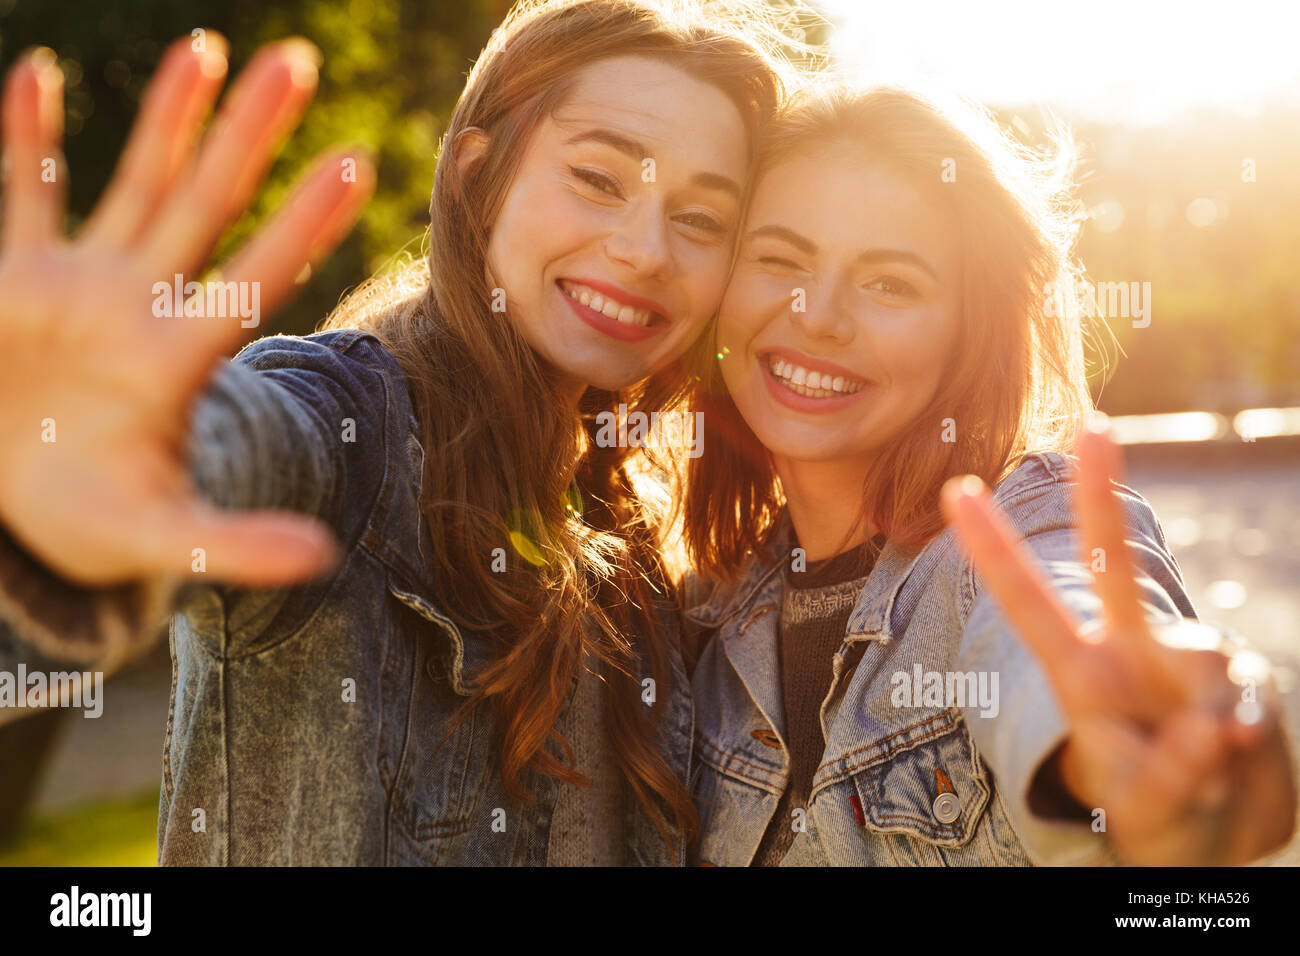 Ritratto di due sorridenti ragazze giovani sventolando la fotocamera mentre in piedi all'aperto Foto Stock